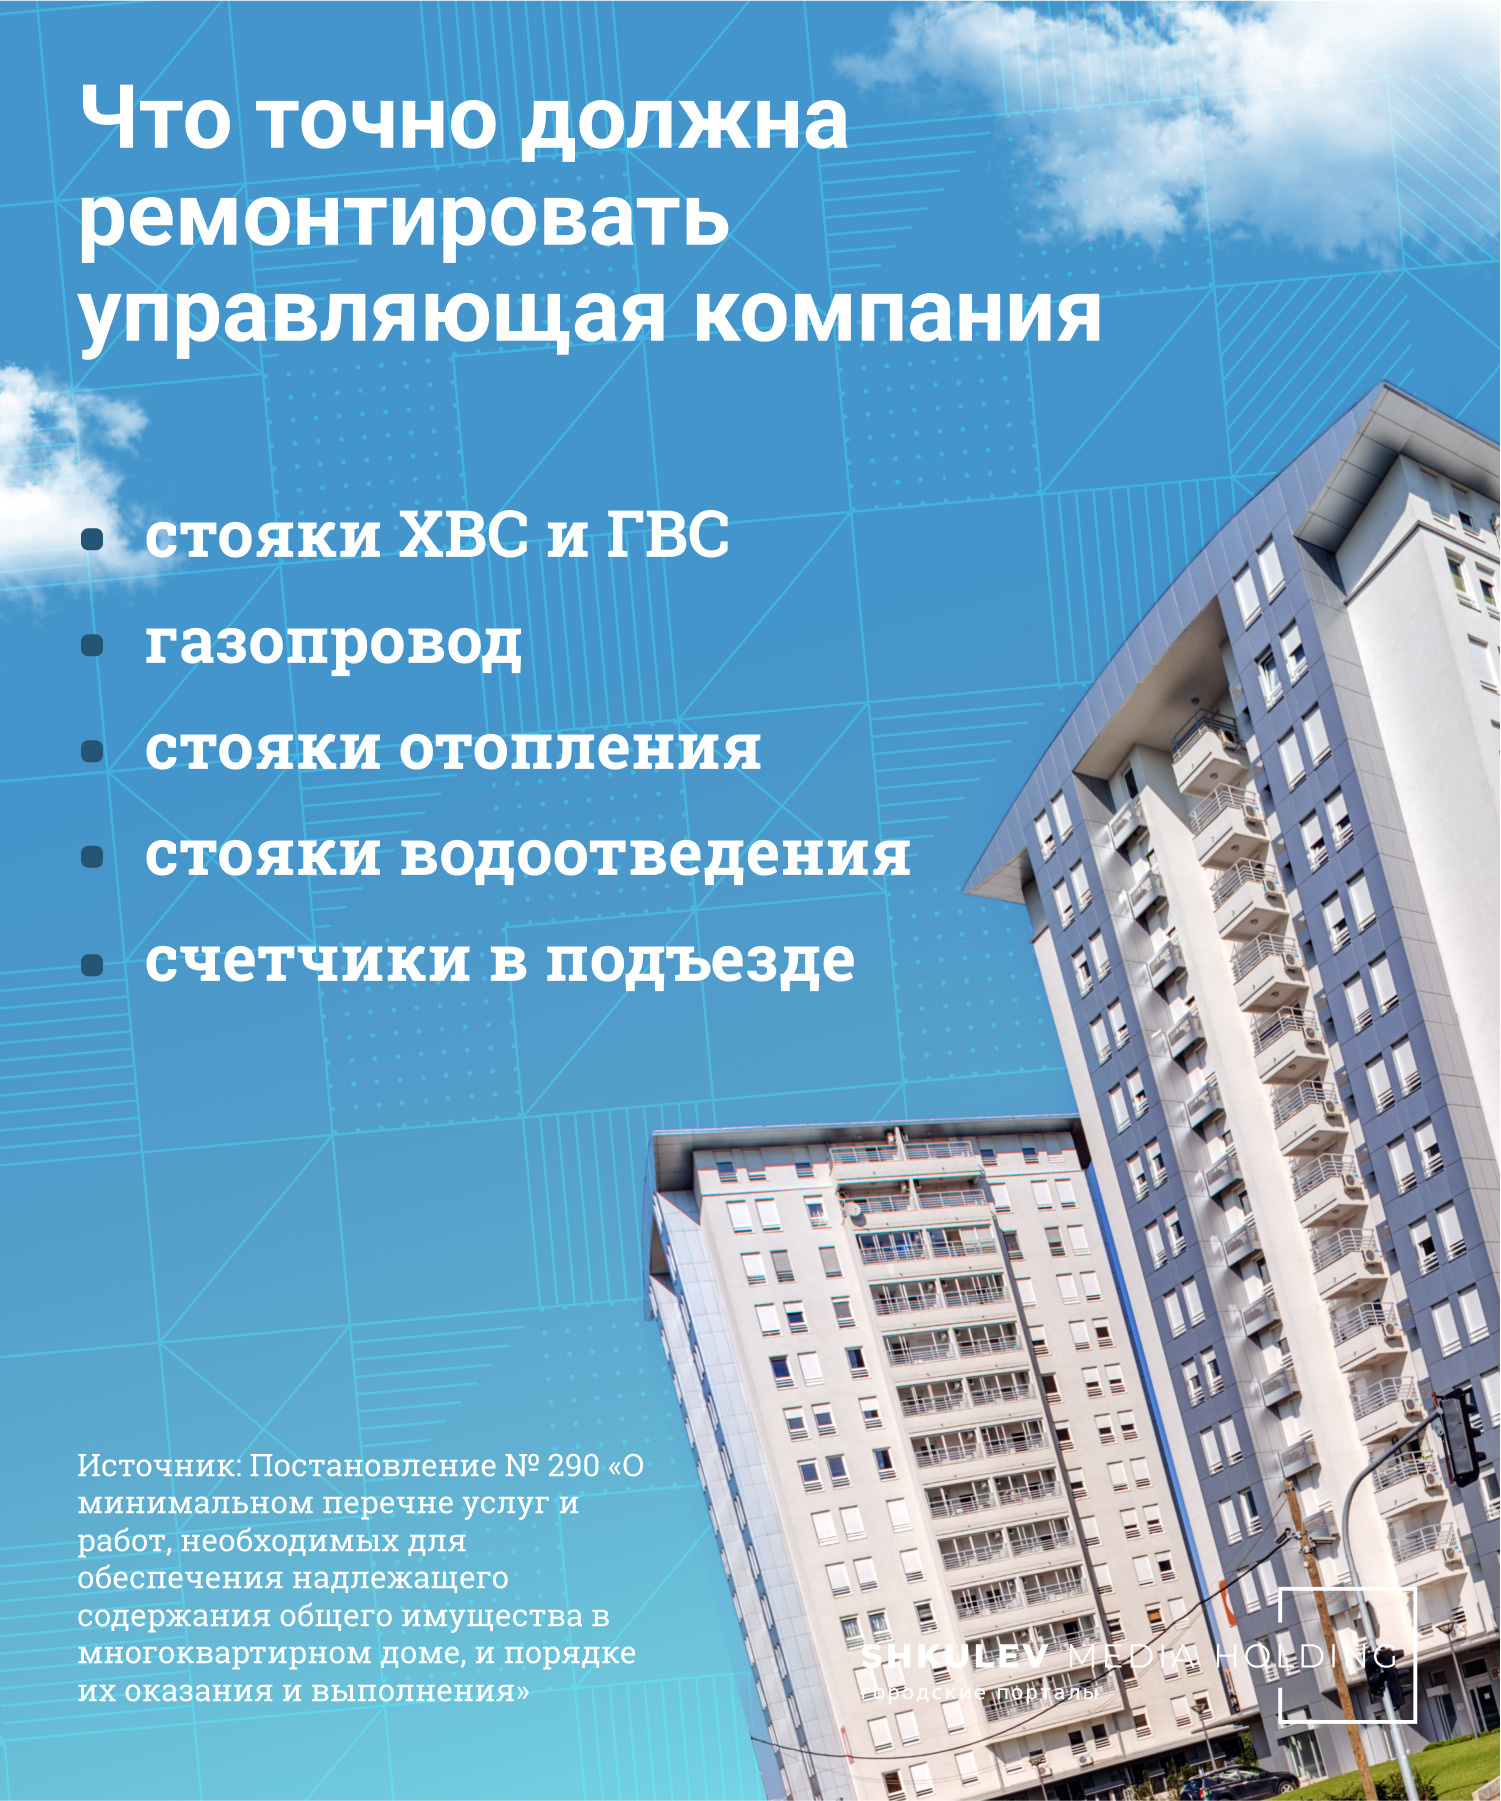 Продається або обмін в lys-cosmetics.ru Пристань( в центрі міста) трьохкімнатна квартира - Куплю Квартиру